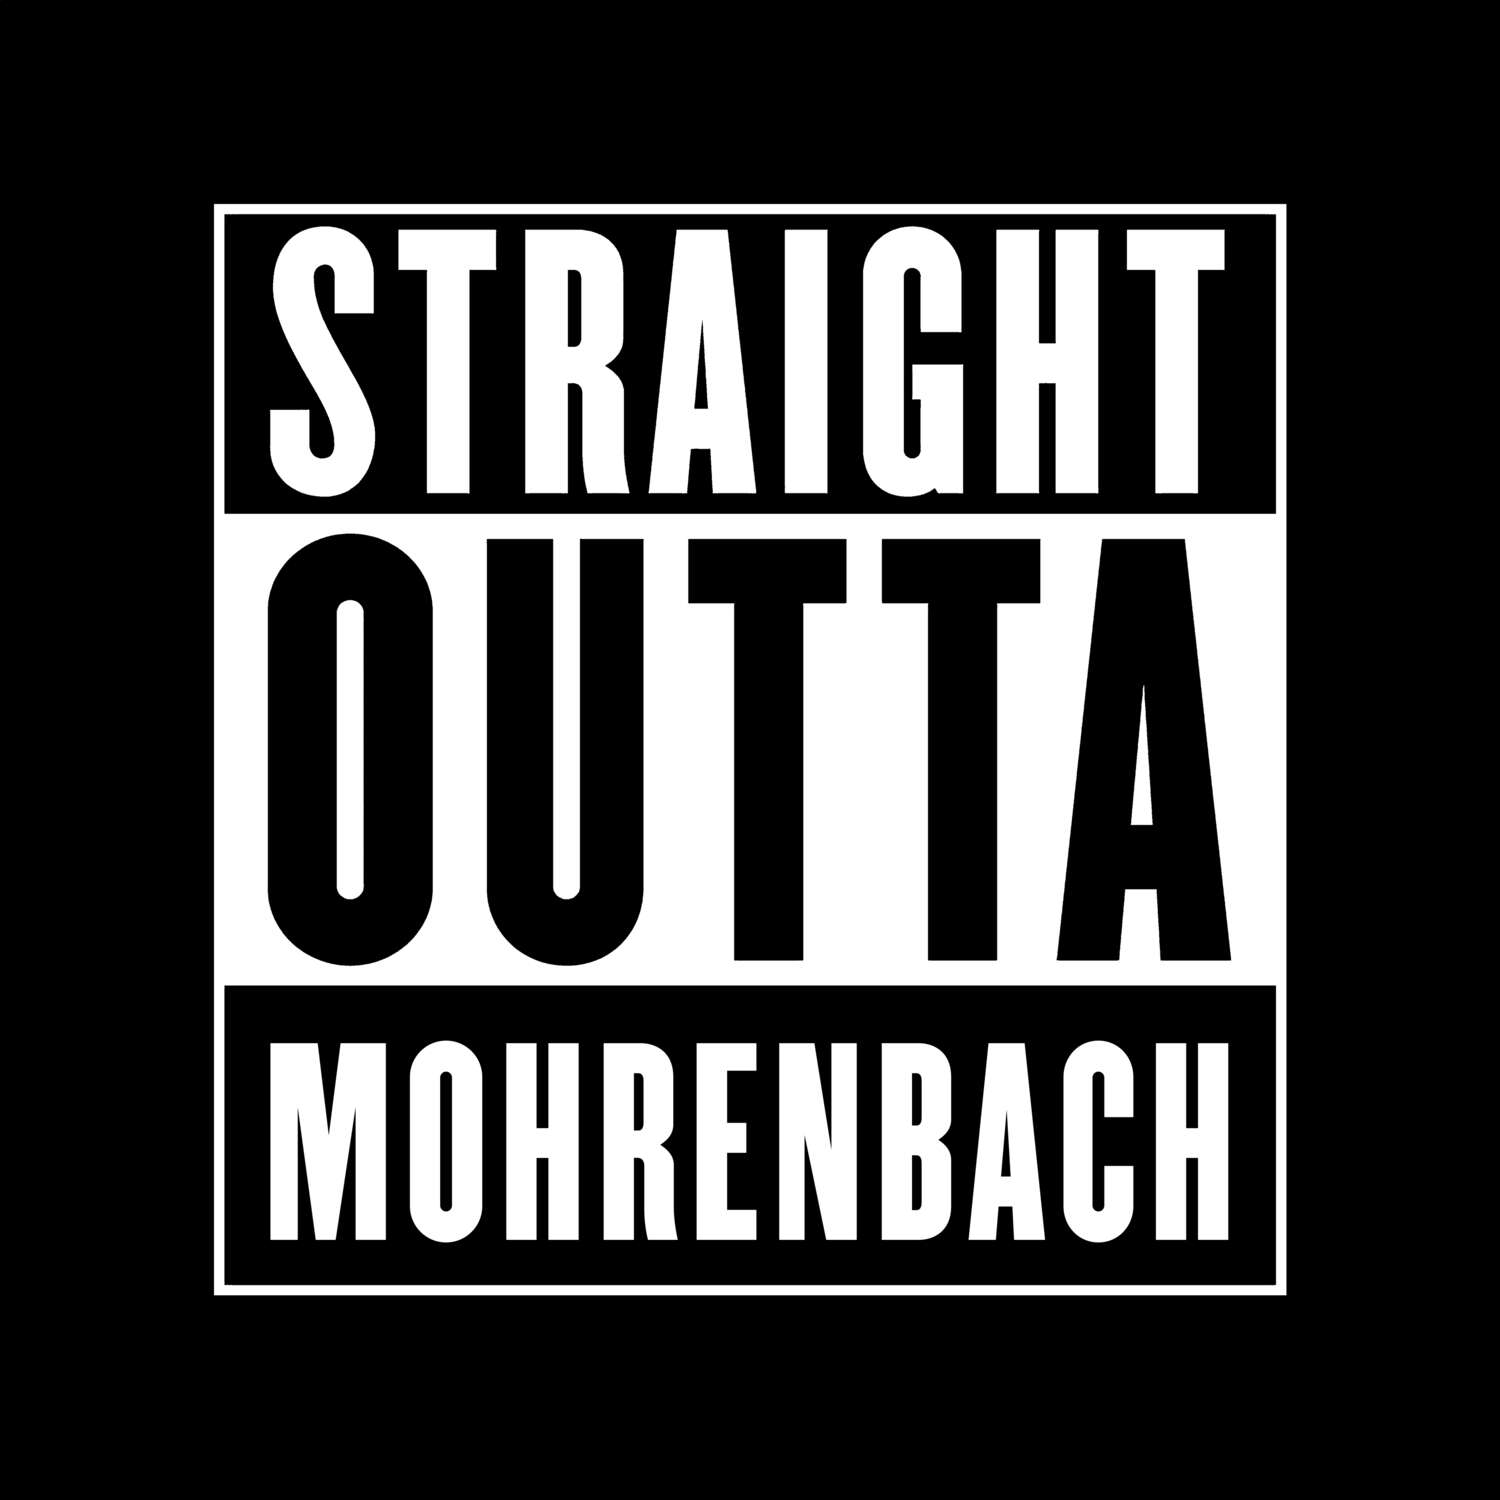 Mohrenbach T-Shirt »Straight Outta«